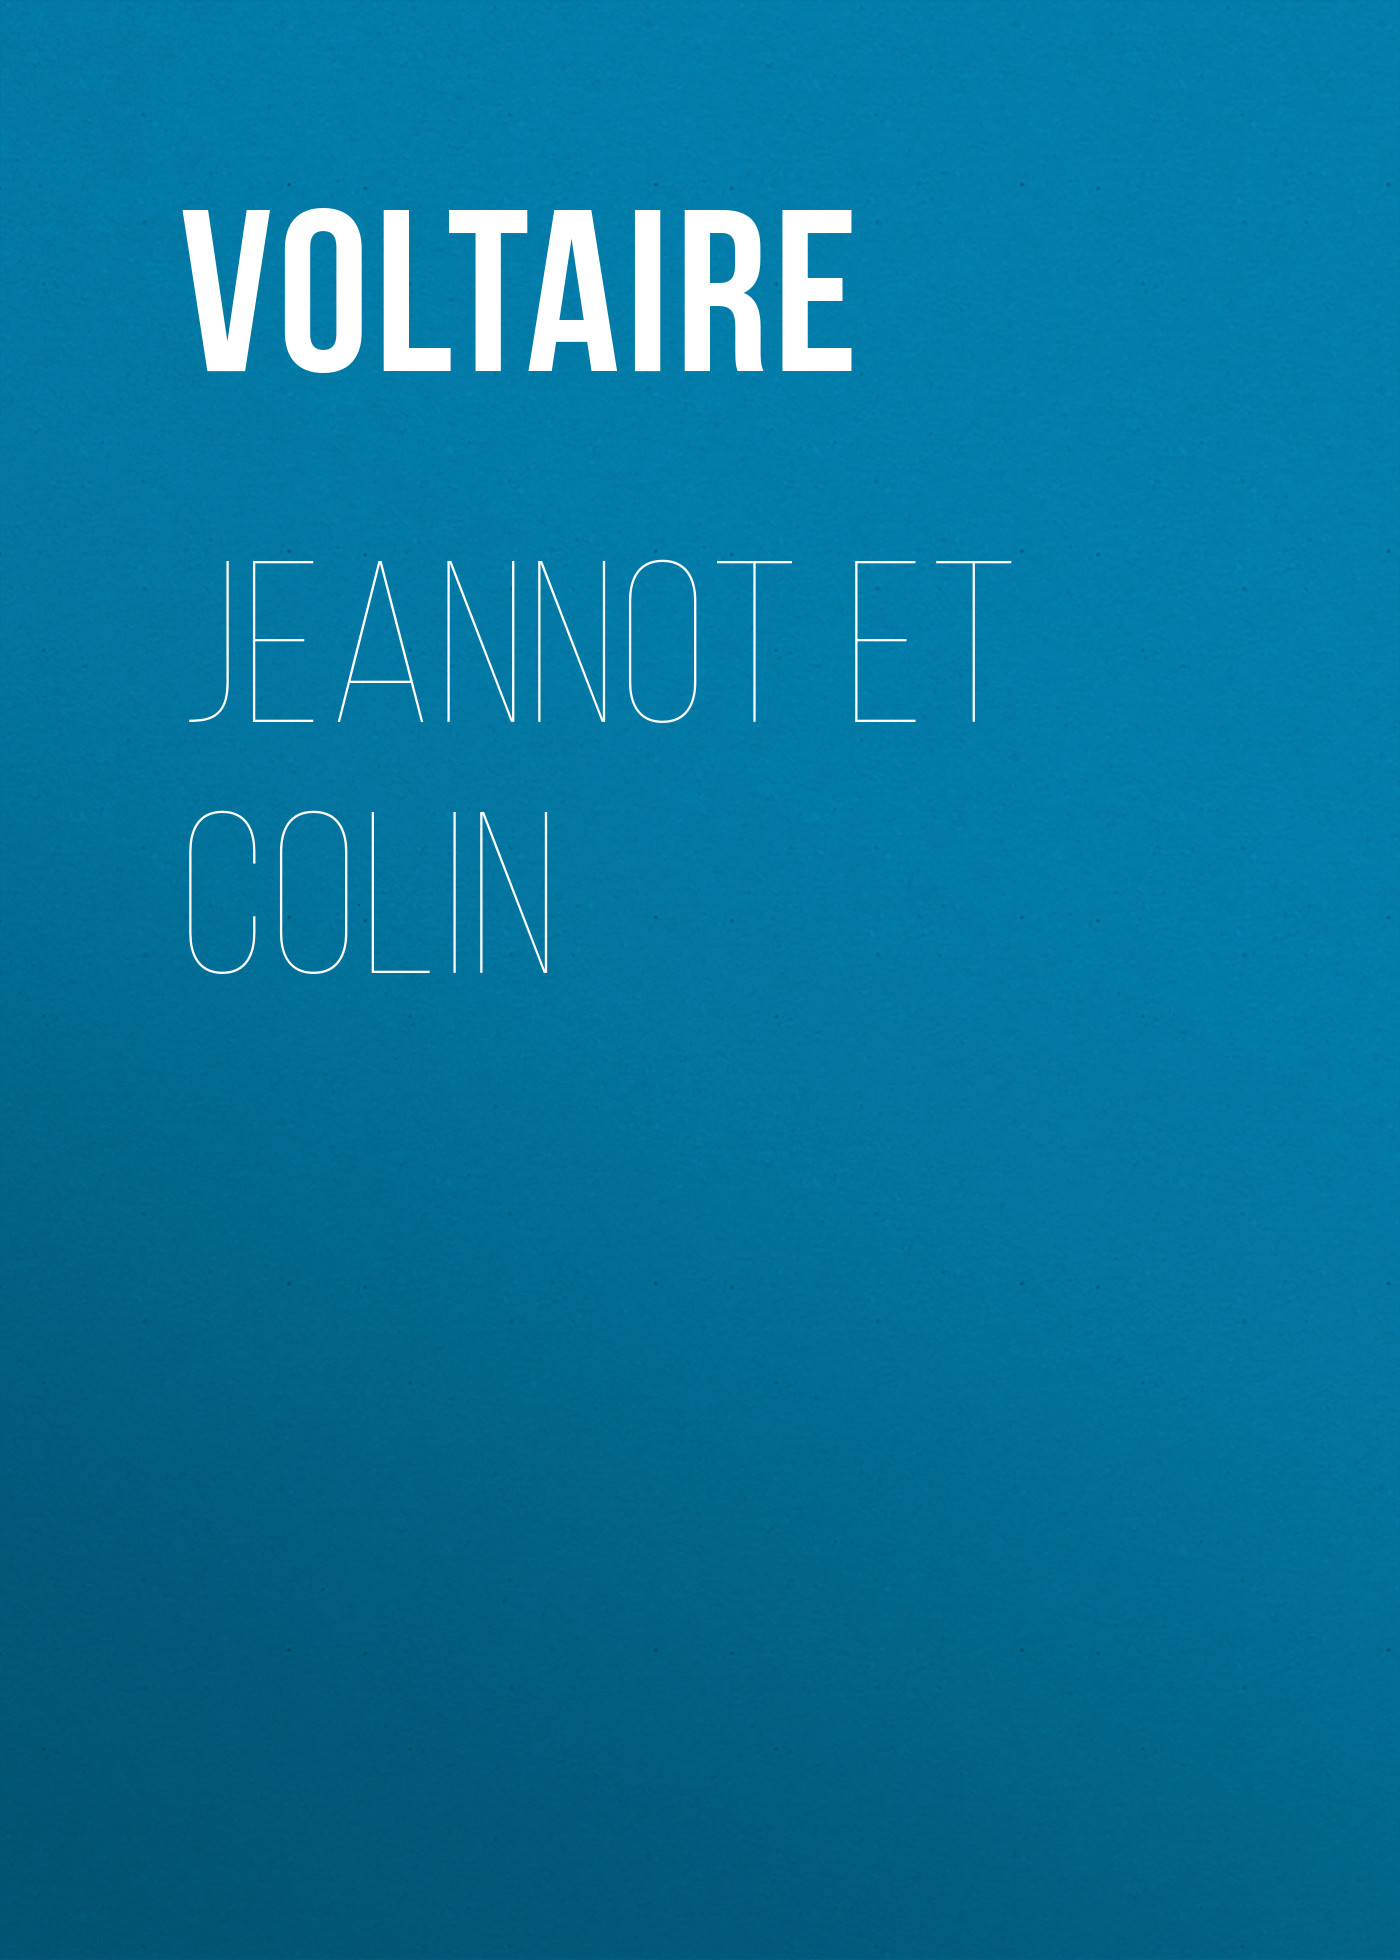 Книга Jeannot et Colin из серии , созданная  Voltaire, может относится к жанру Литература 18 века, Зарубежная классика. Стоимость электронной книги Jeannot et Colin с идентификатором 25560028 составляет 0 руб.